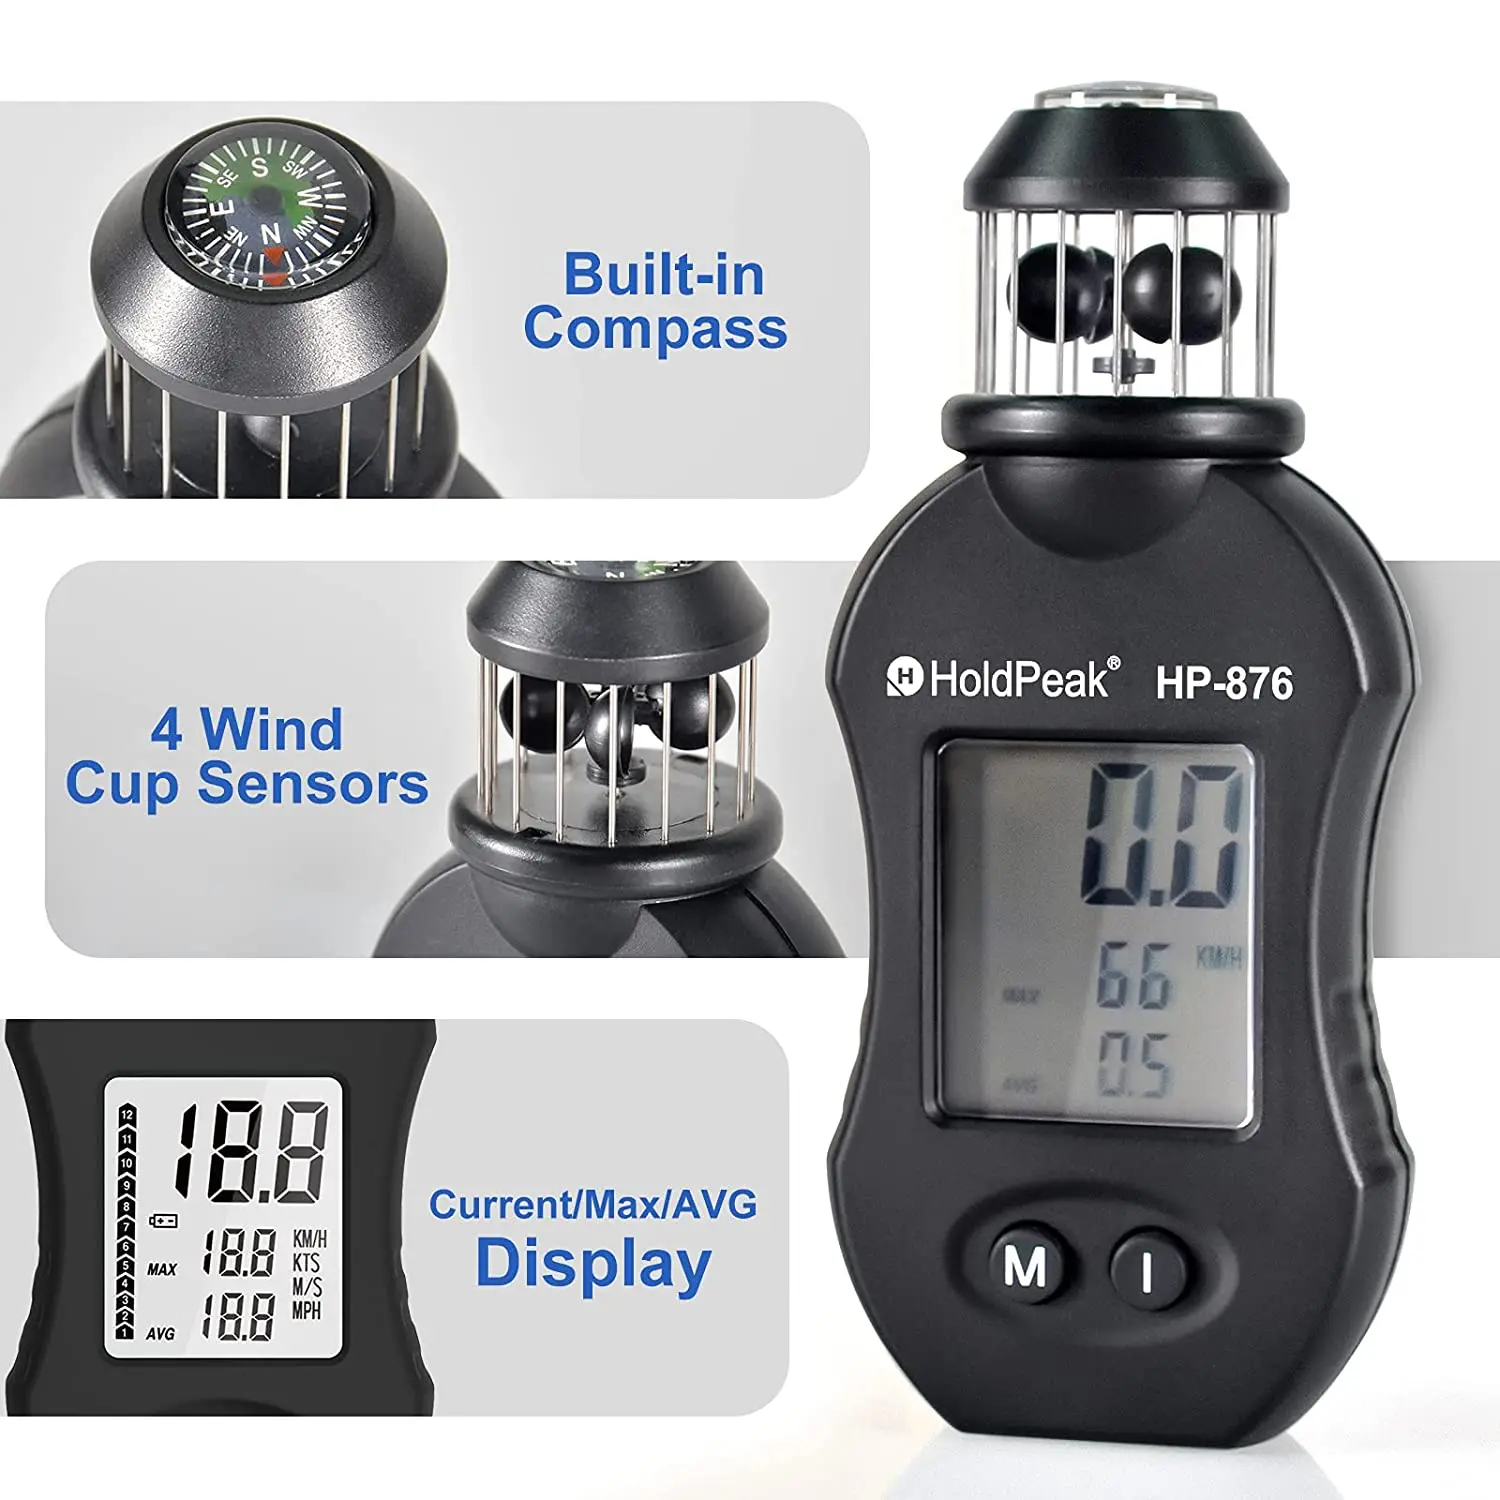 

Holdpeak HP-876 Handheld Anemometer Digital Wind Speed Meter Measuring Air Speed Air Volume for HVAC Vents,Boat Sailing,Shooting